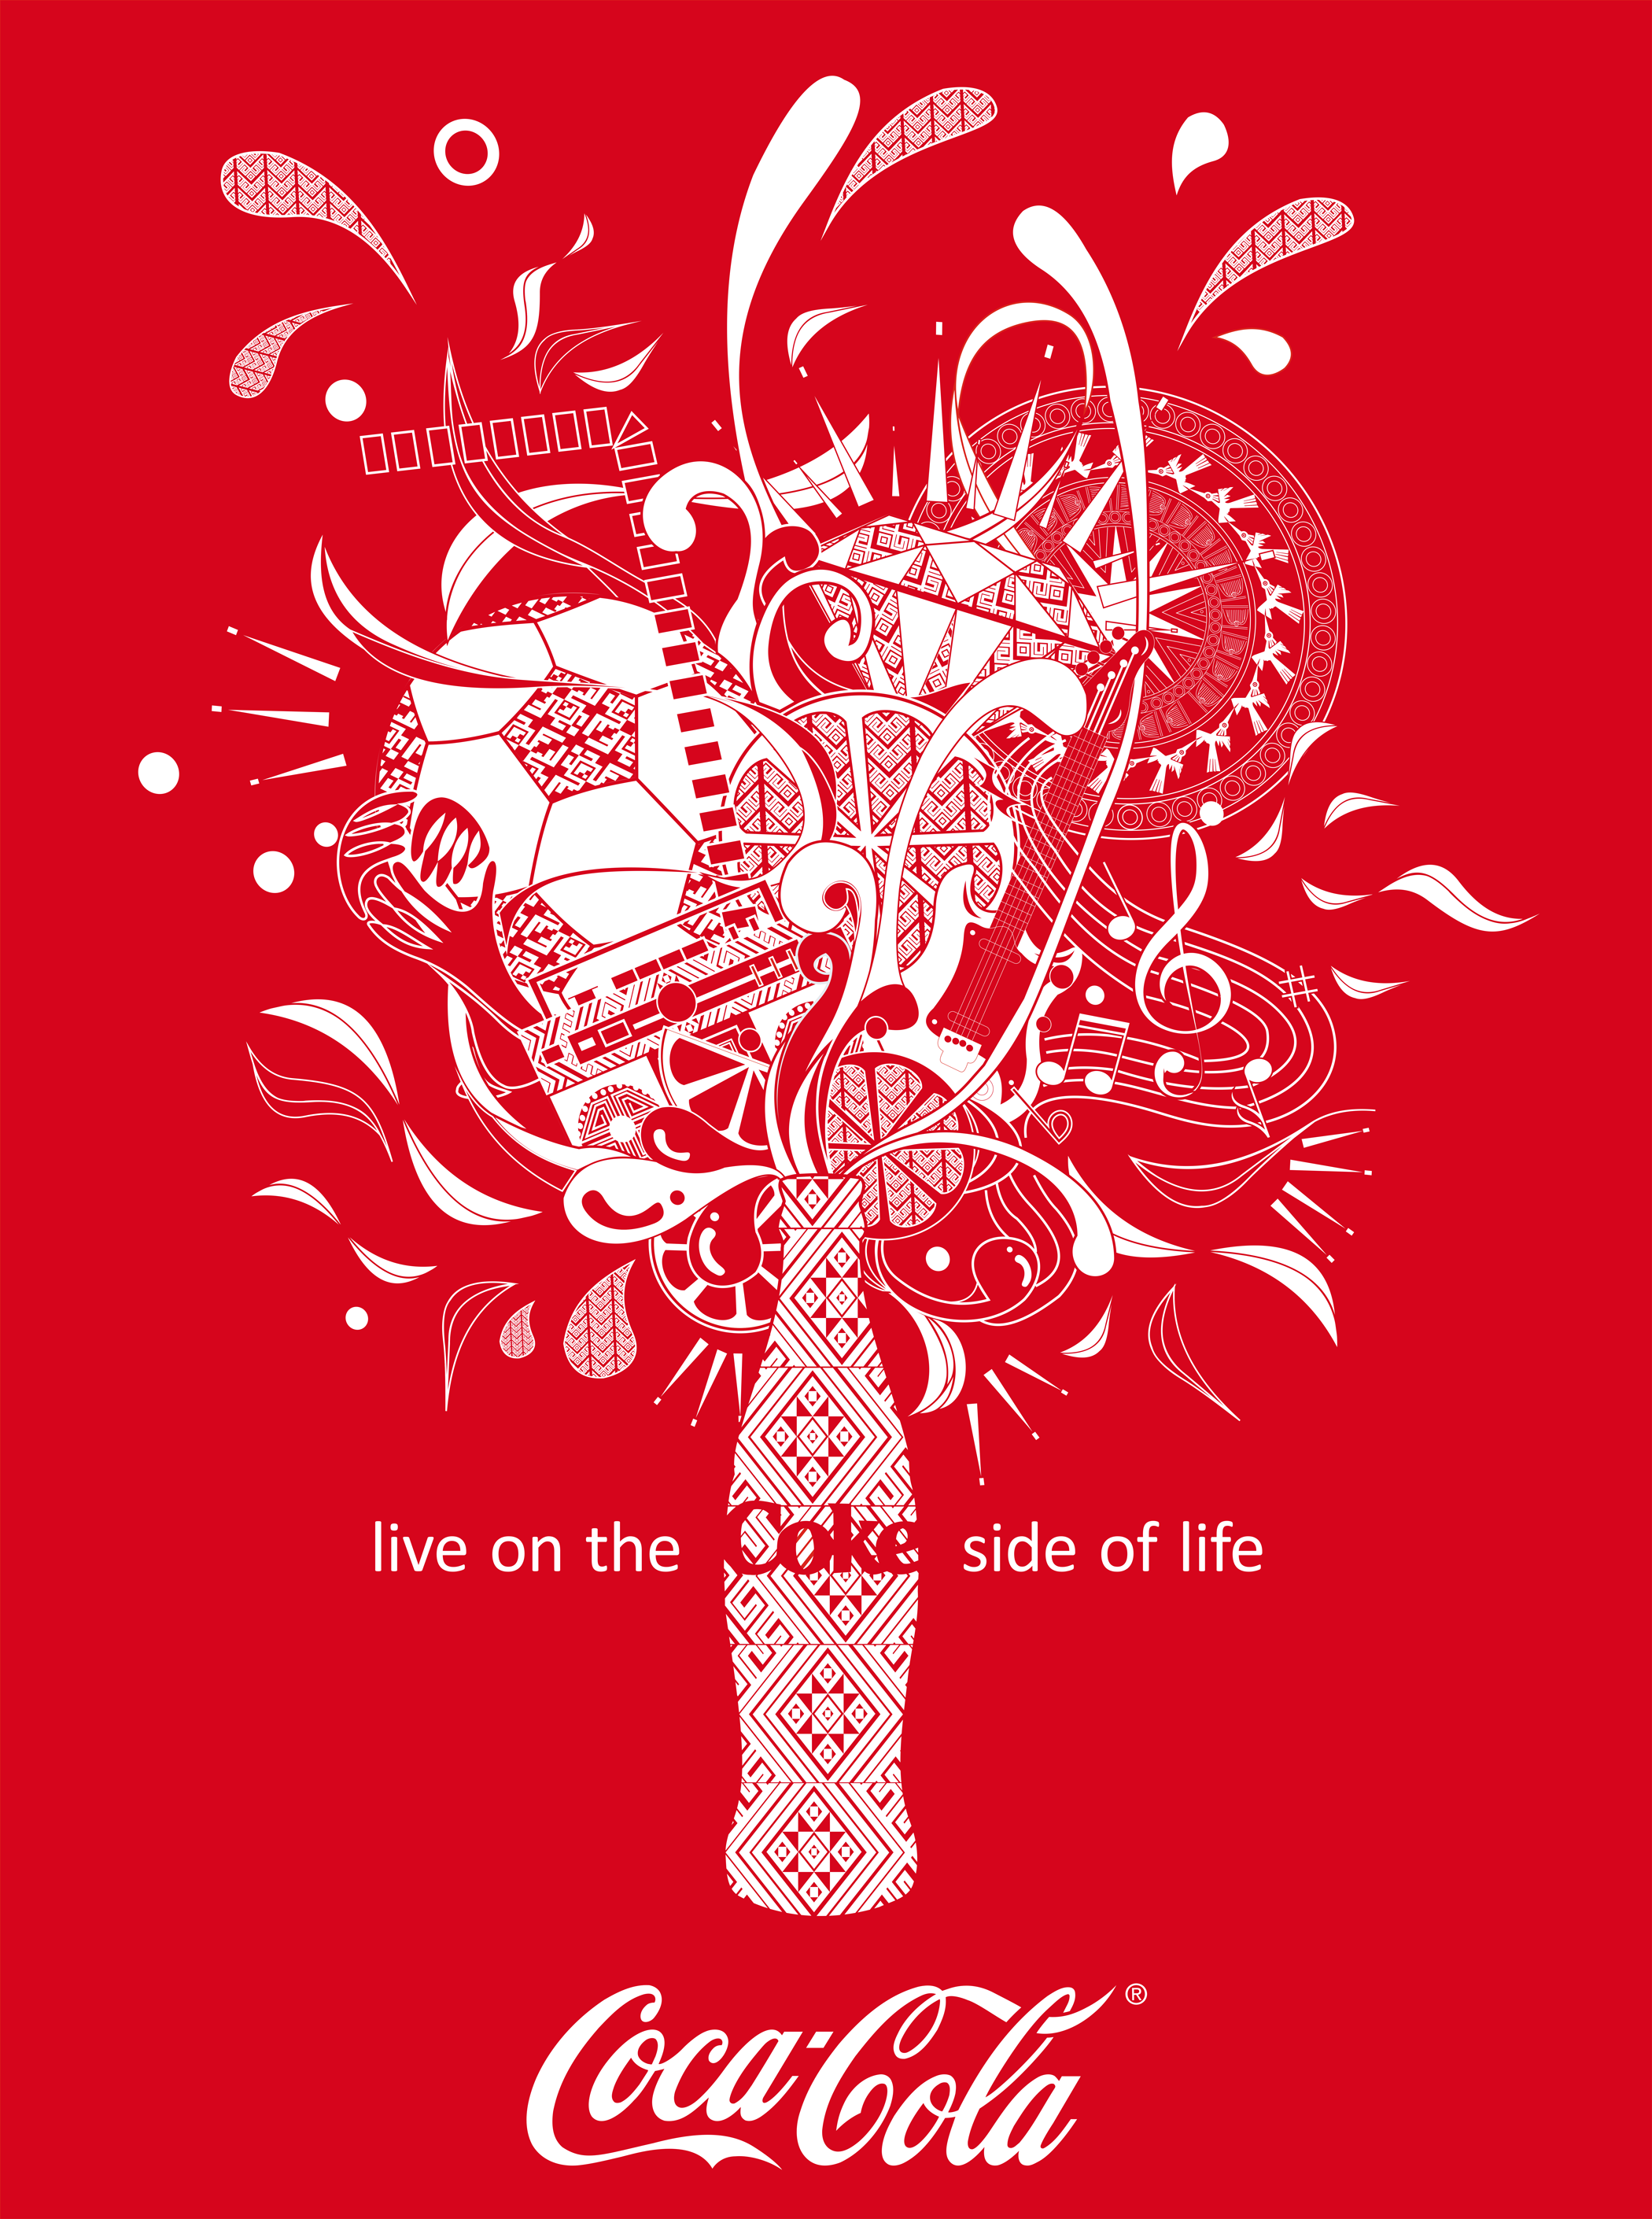 可口可乐瓶子设计灵感图片